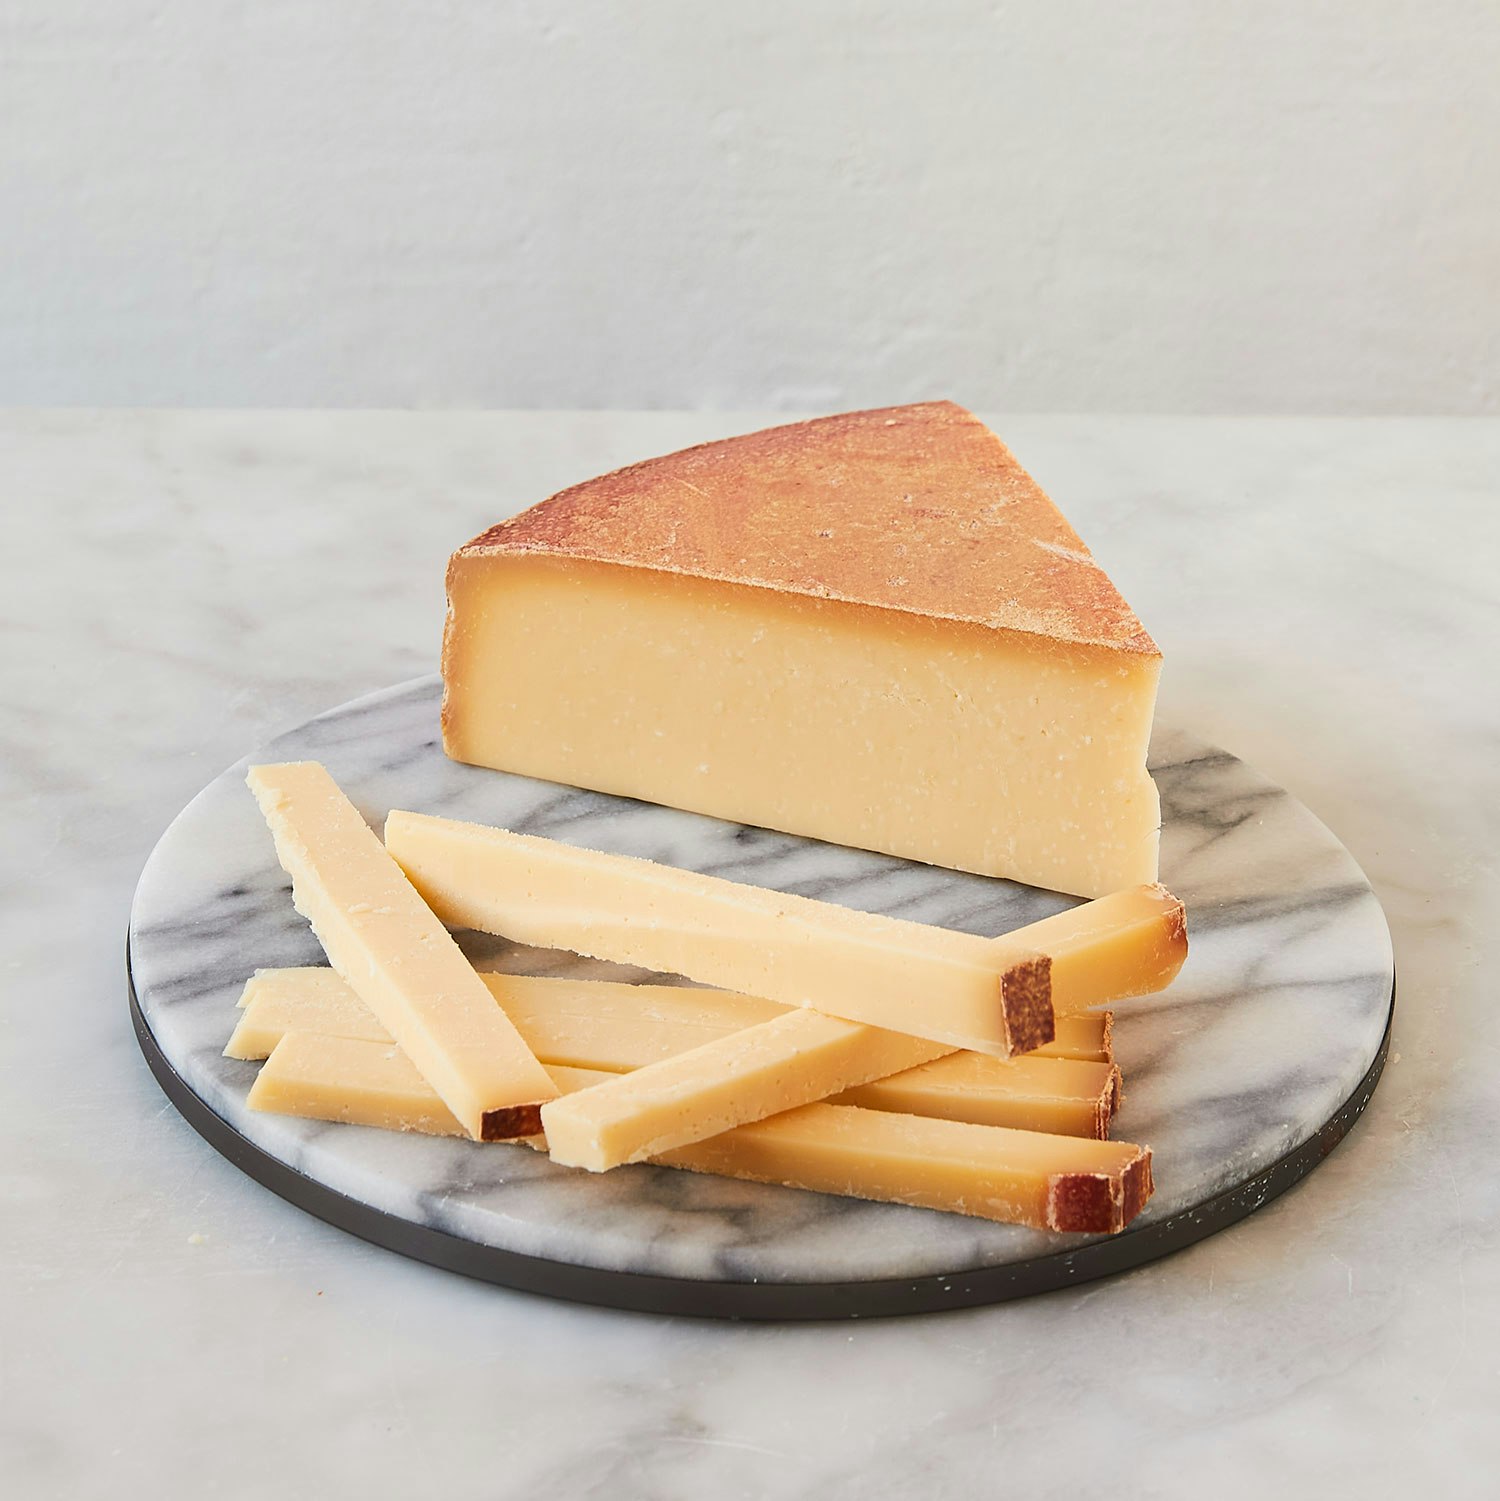 hornbacher cheese